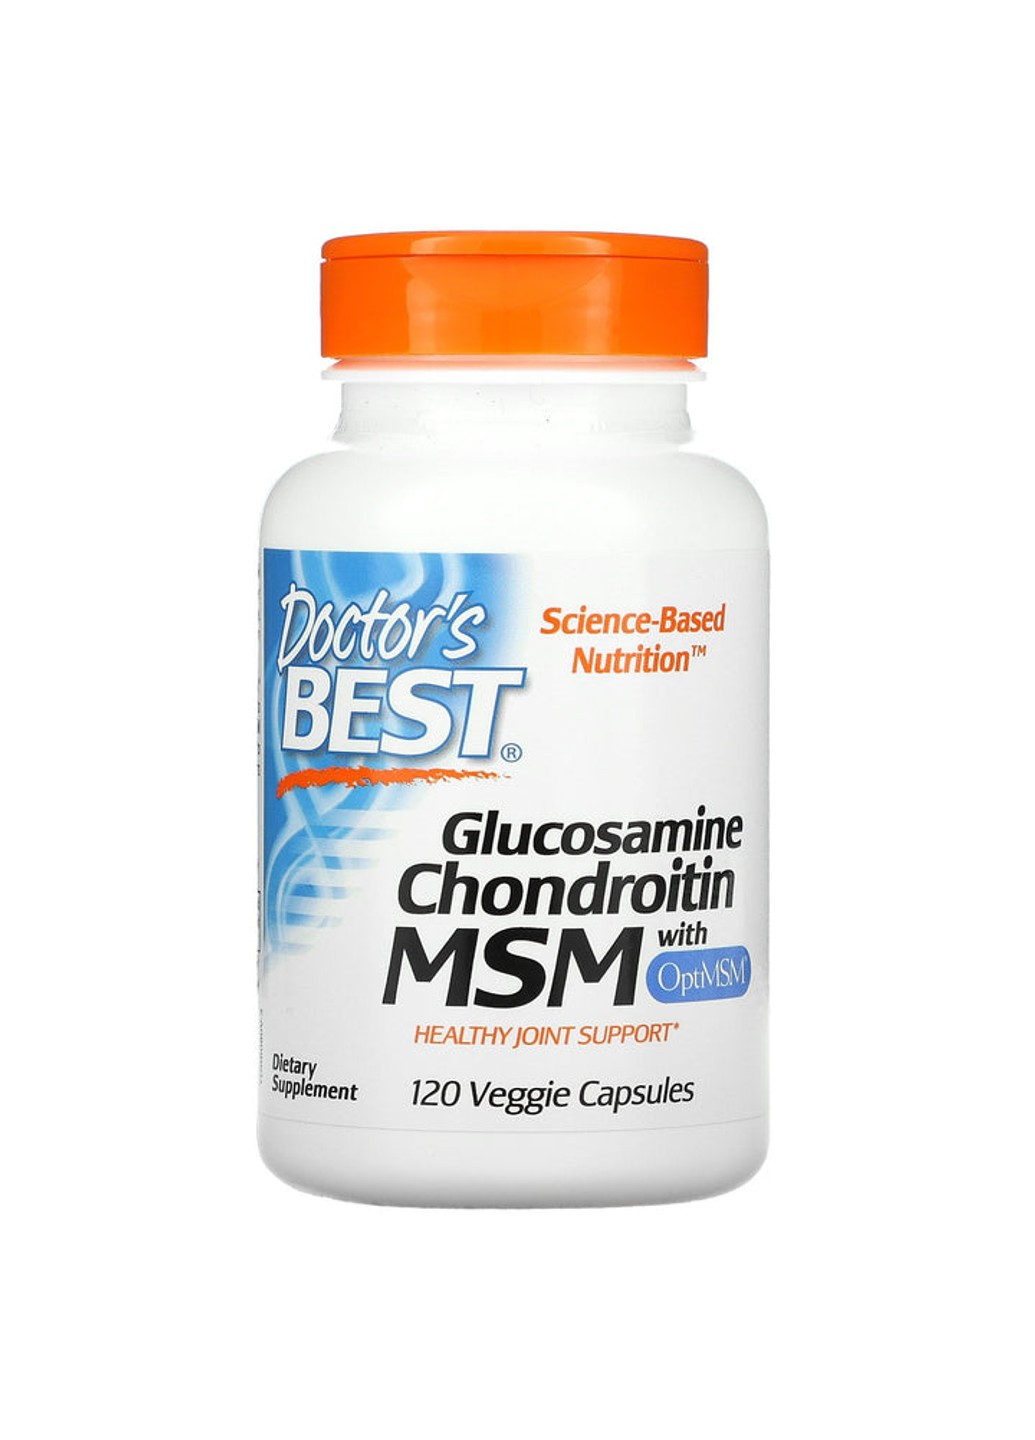 Глюкозамин хондроитин МСМ Glucosamine Chondroitin with MSM (120 капс) доктогр бест Doctor's Best (255409720)